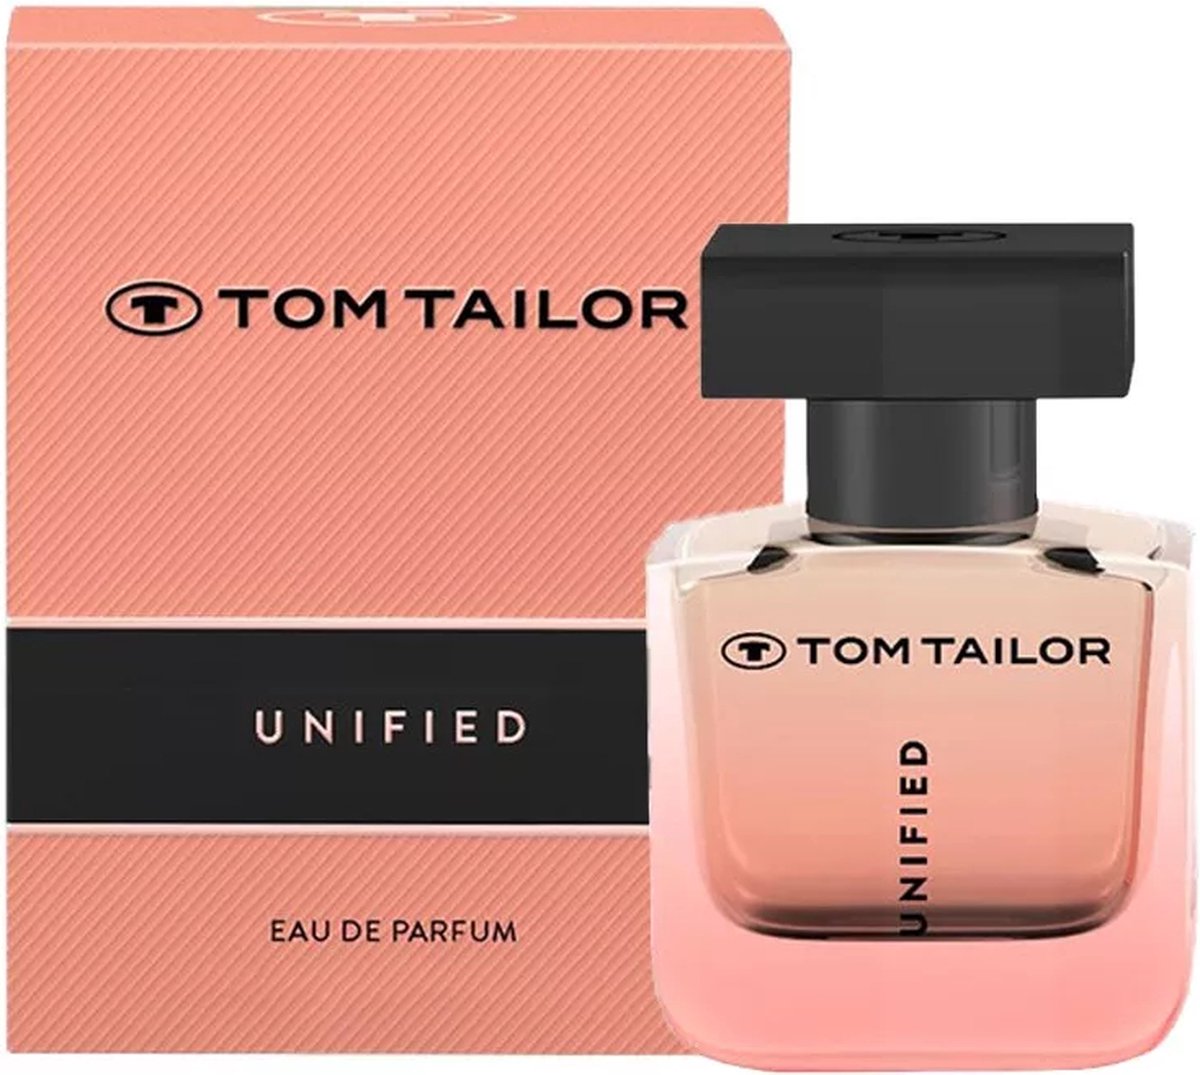 Tom Eau Tailor bol | de Unified Parfum 50ml